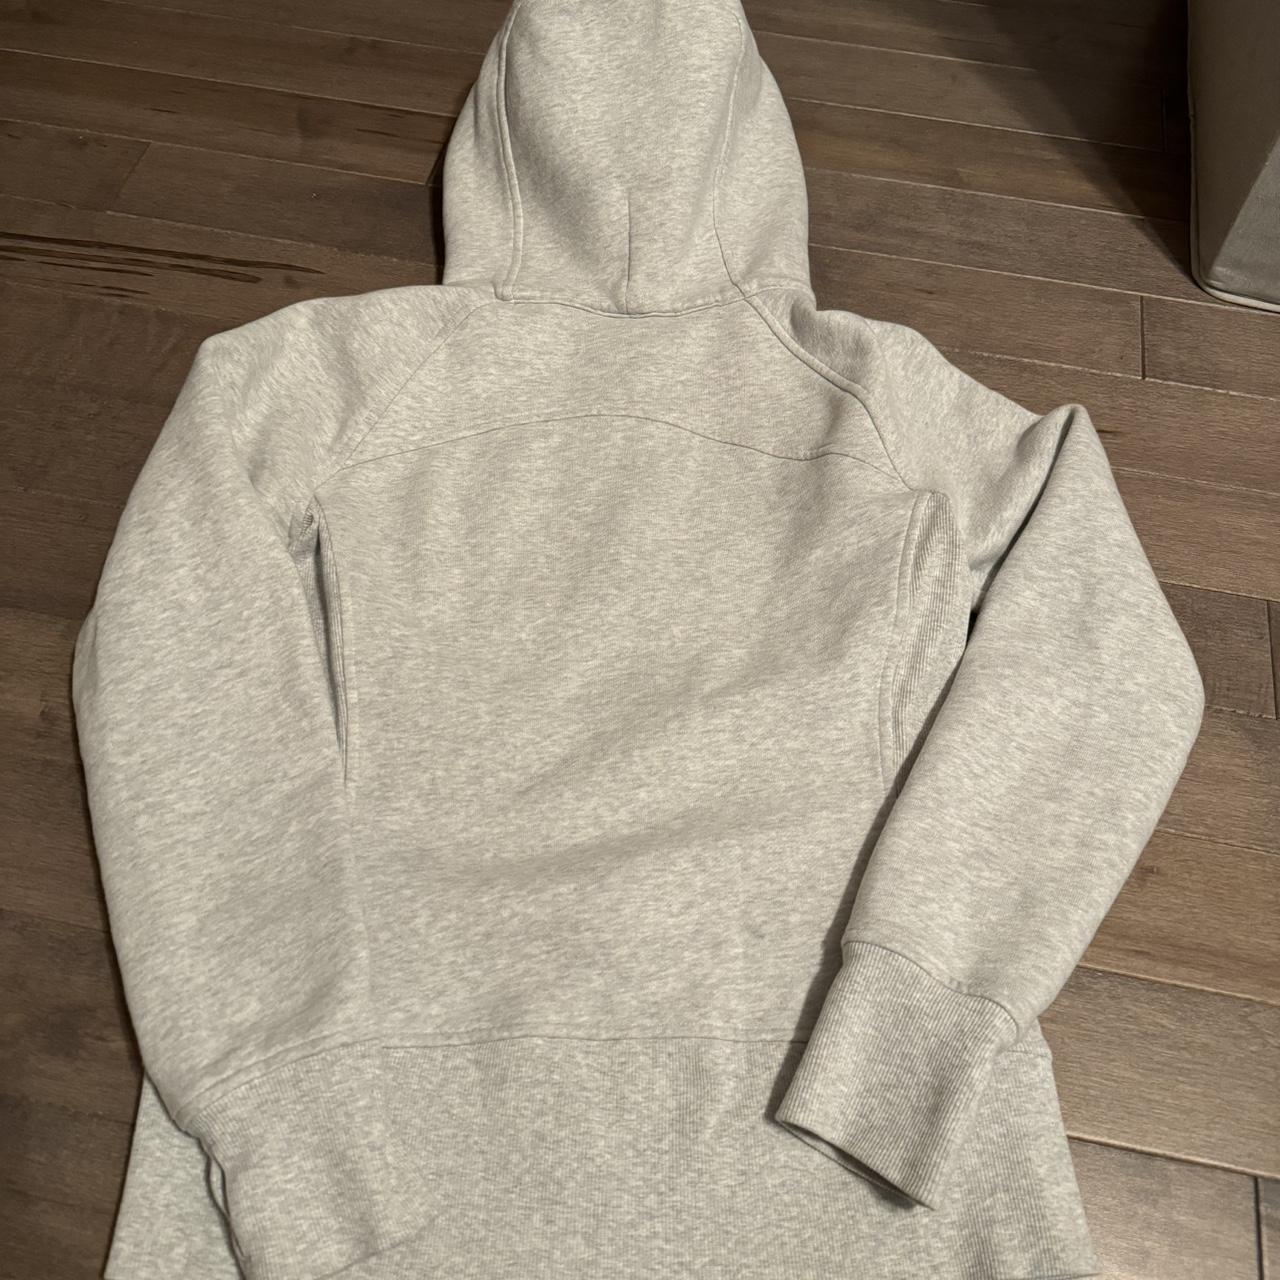 lululemon scuba full zip hoodie color: heathered - Depop